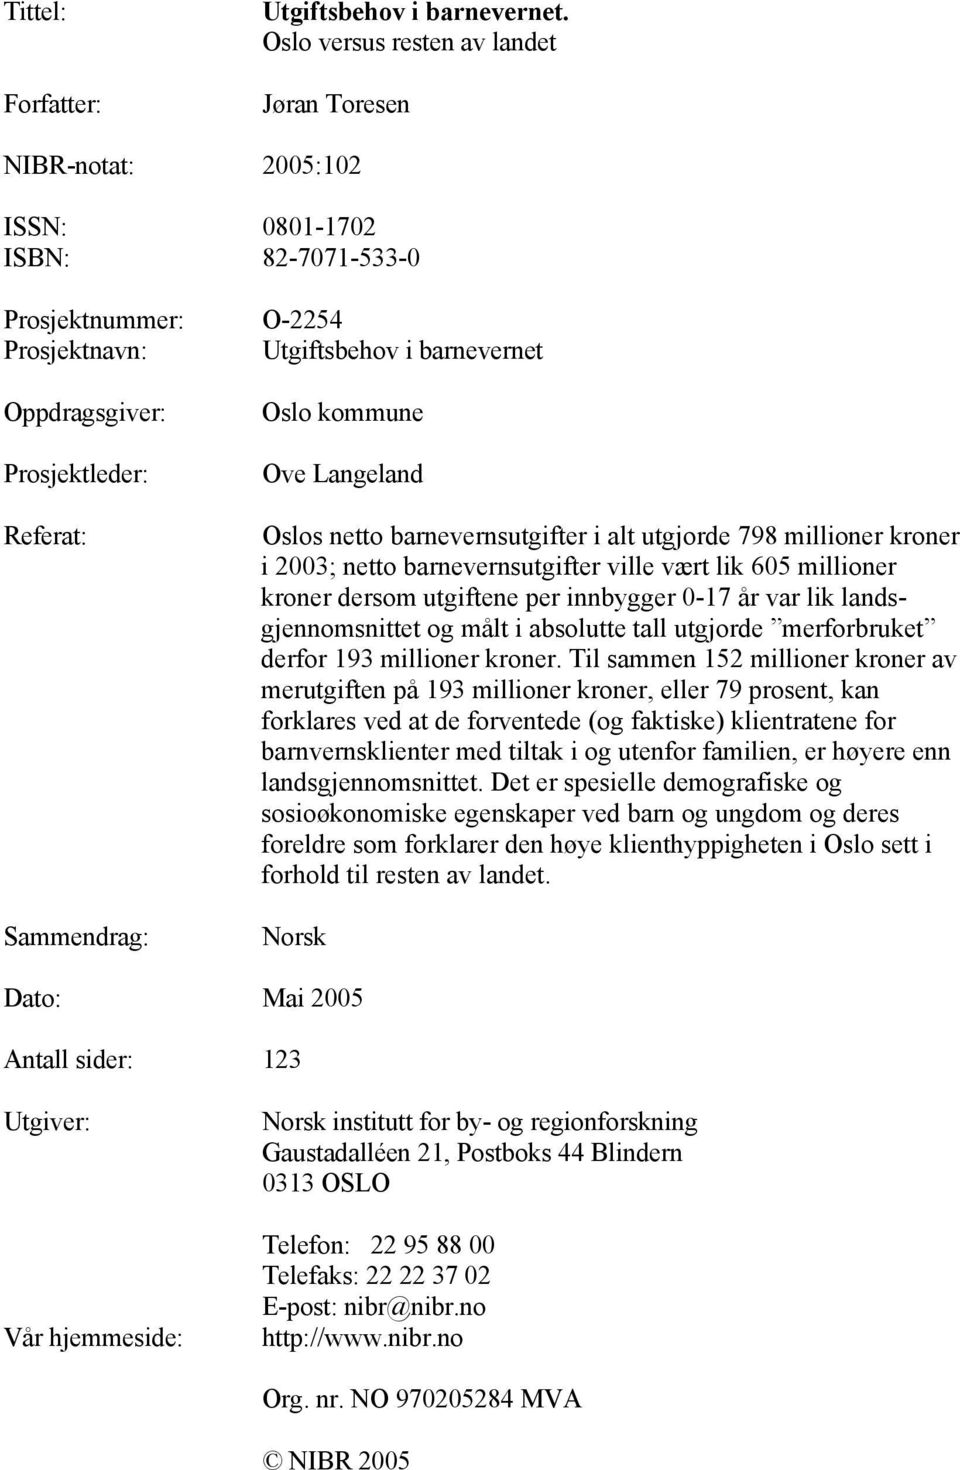 Referat: Sammendrag: Oslo kommune Ove Langeland Oslos netto barnevernsutgifter i alt utgjorde 798 millioner kroner i 2003; netto barnevernsutgifter ville vært lik 605 millioner kroner dersom